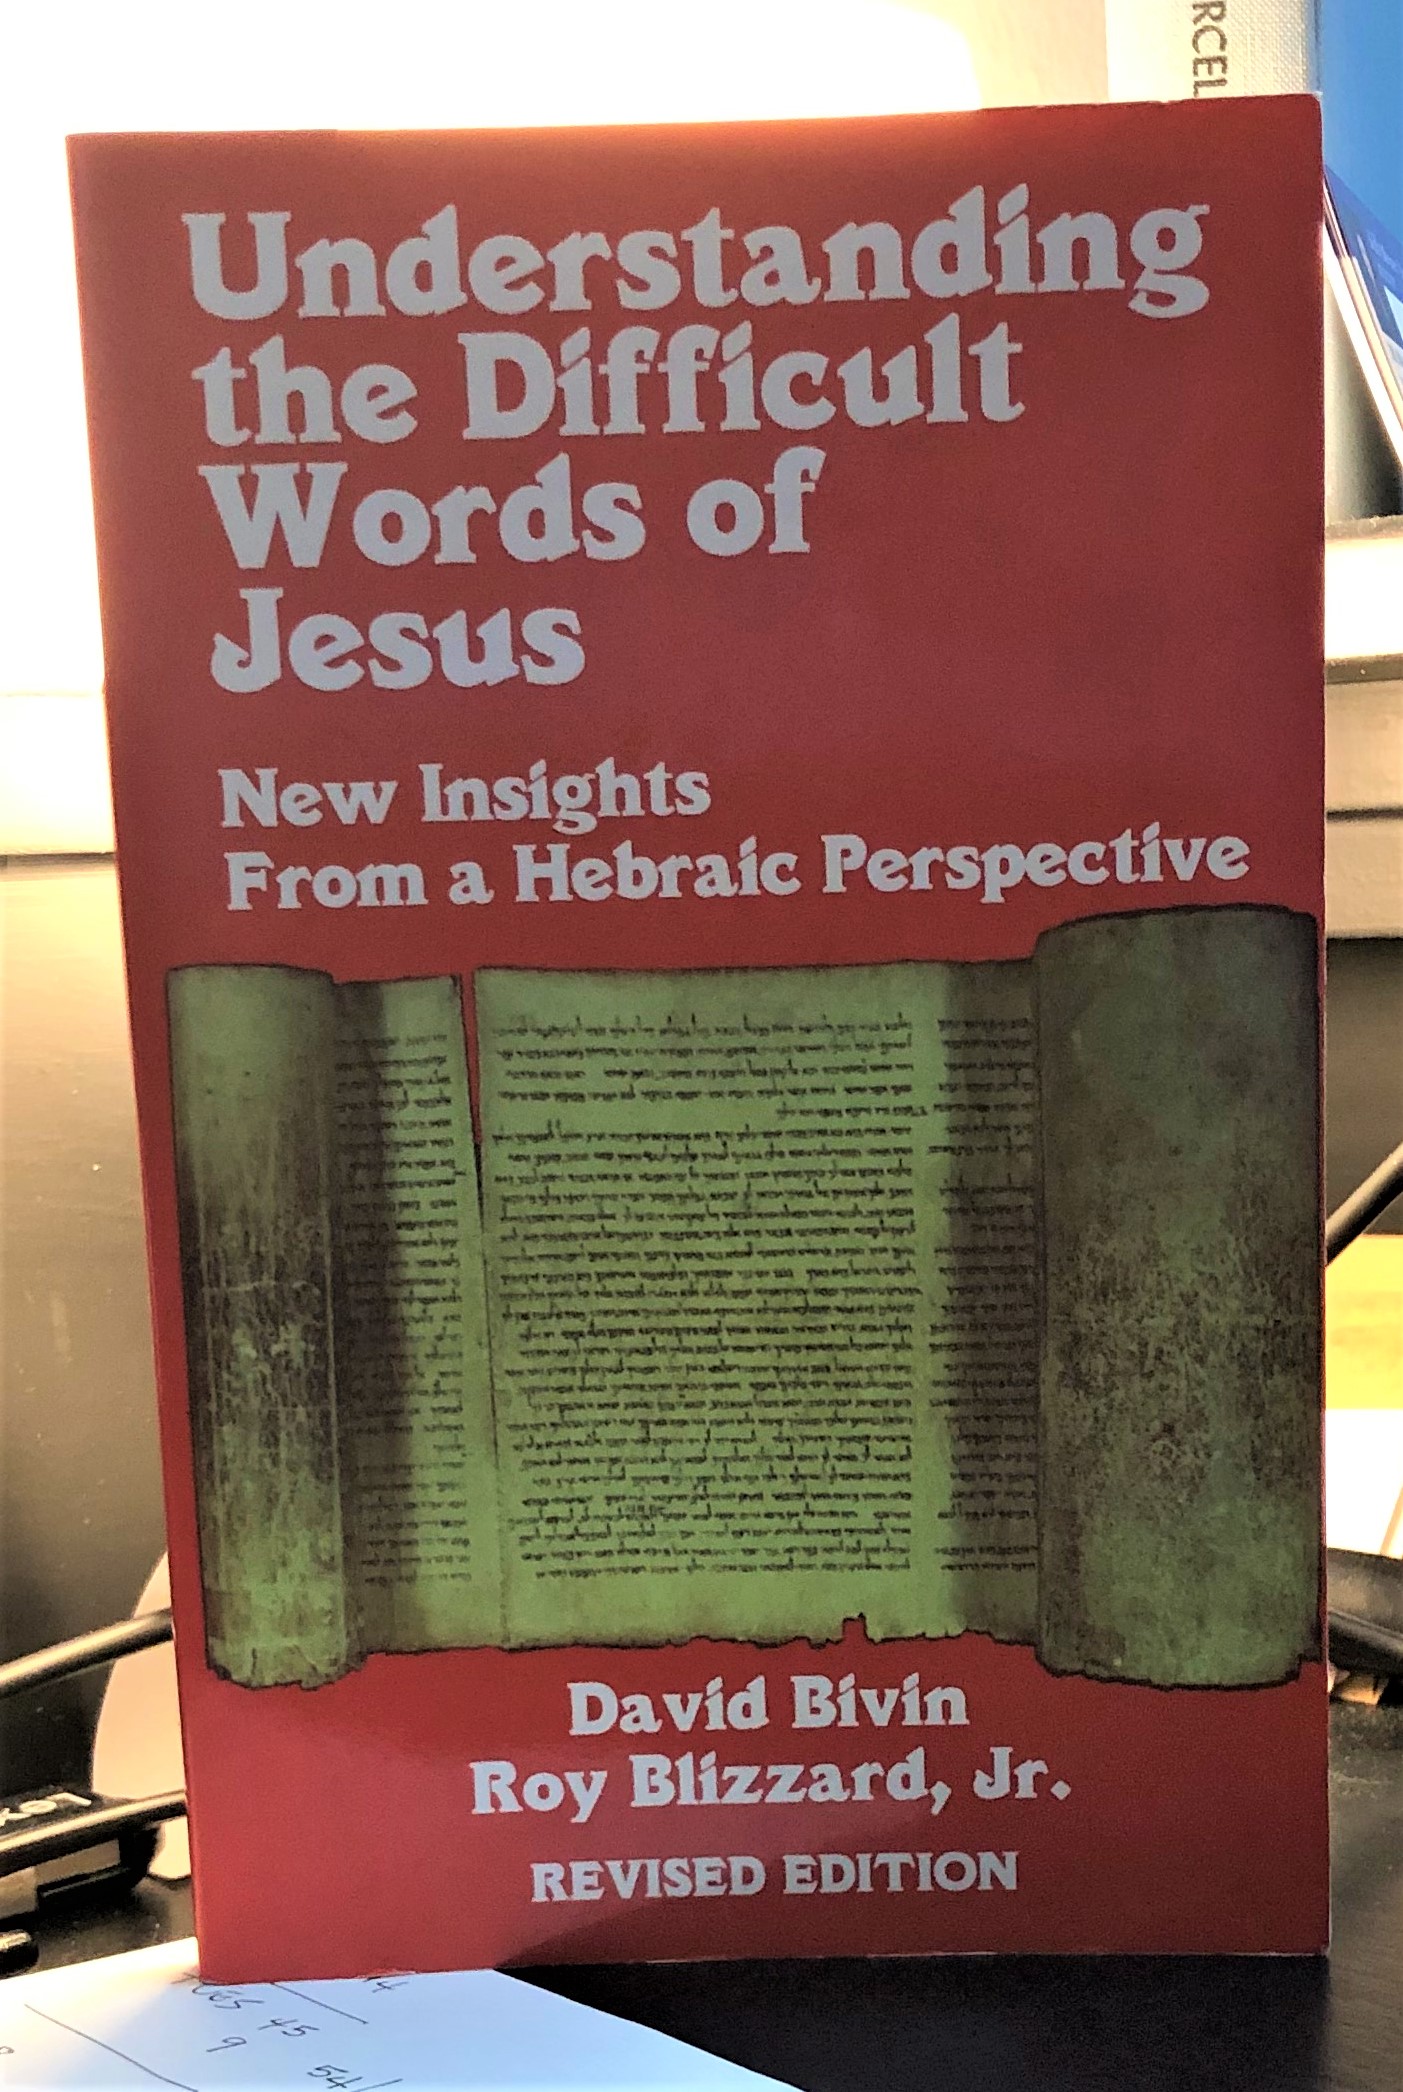 Understanding the Difficult Words of Jesus - Bivin & Blizzard, Jr.